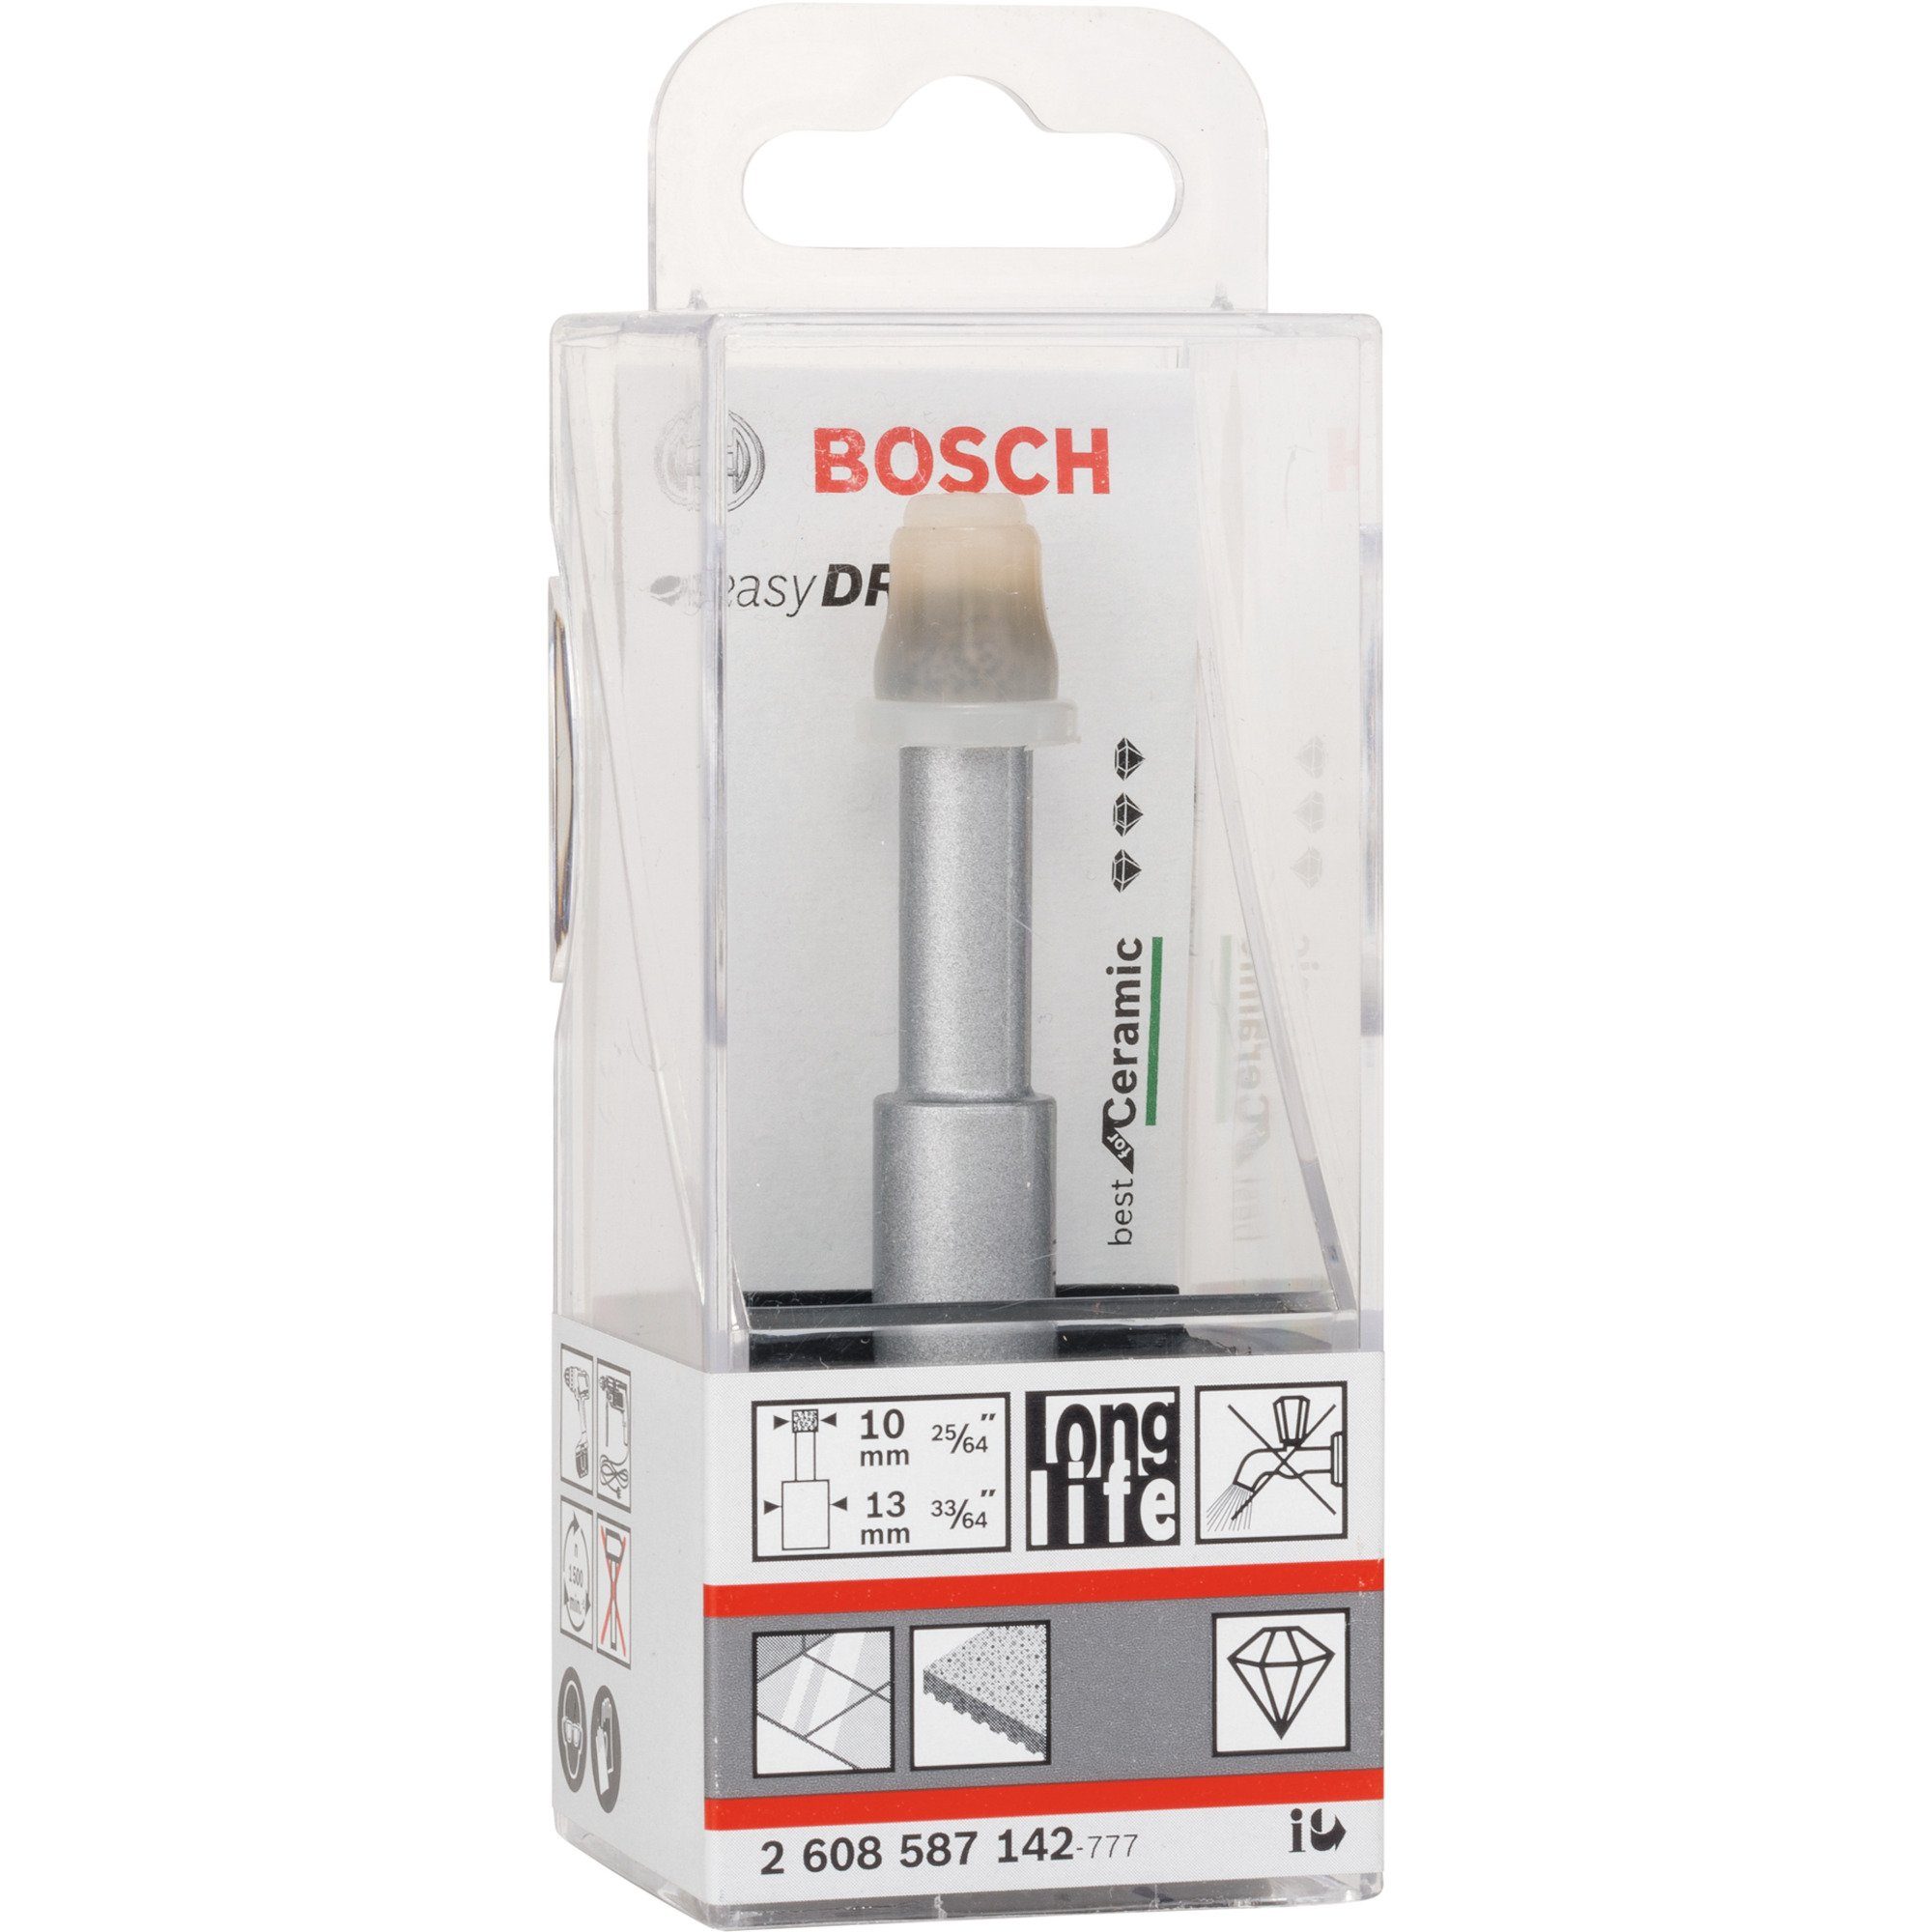 Dry Diamantbohrer Bosch Professional for Best Bitset Bohrer- BOSCH und Easy